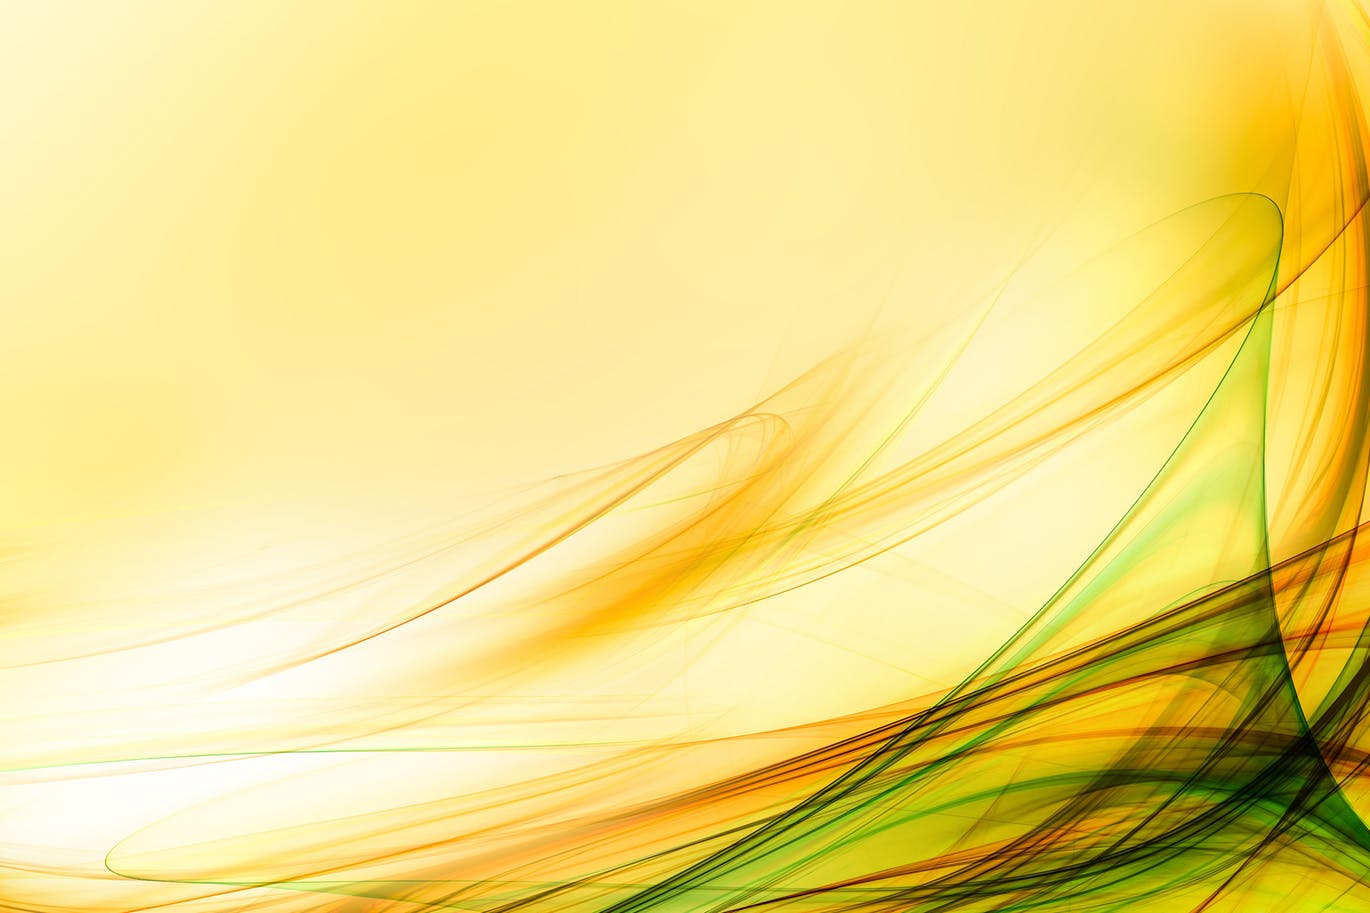 超高清抽象平滑线条黄色背景素材 Abstract yellow background插图